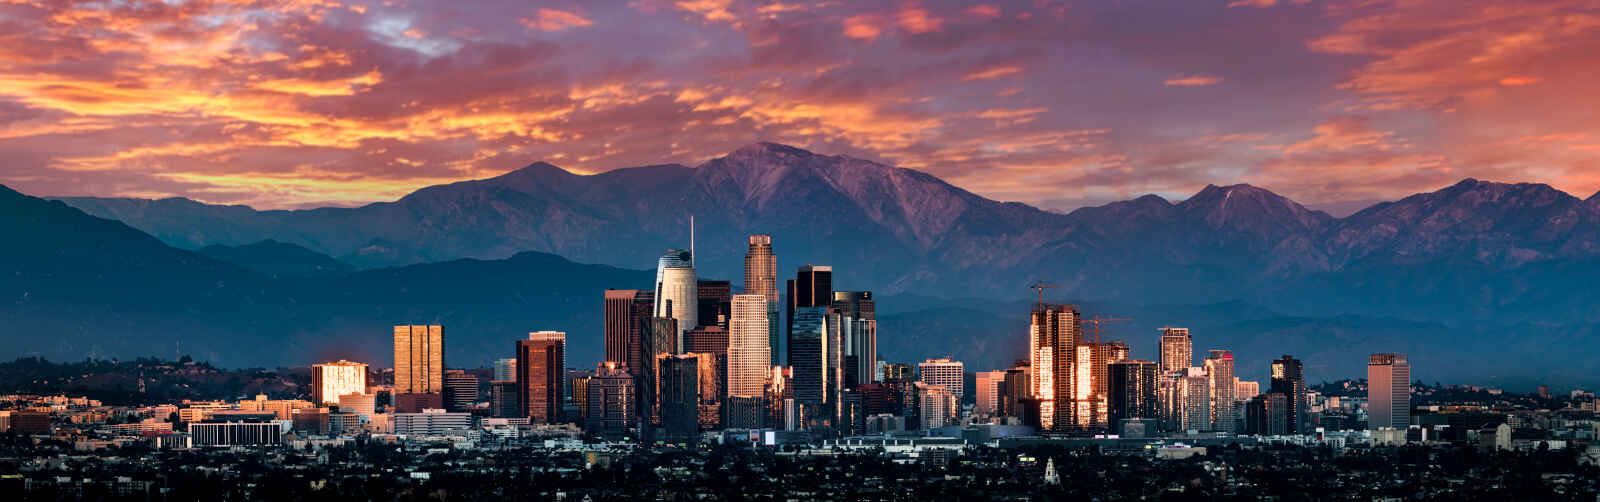 Coucher de soleil sur la skyline de Los Angeles, New York